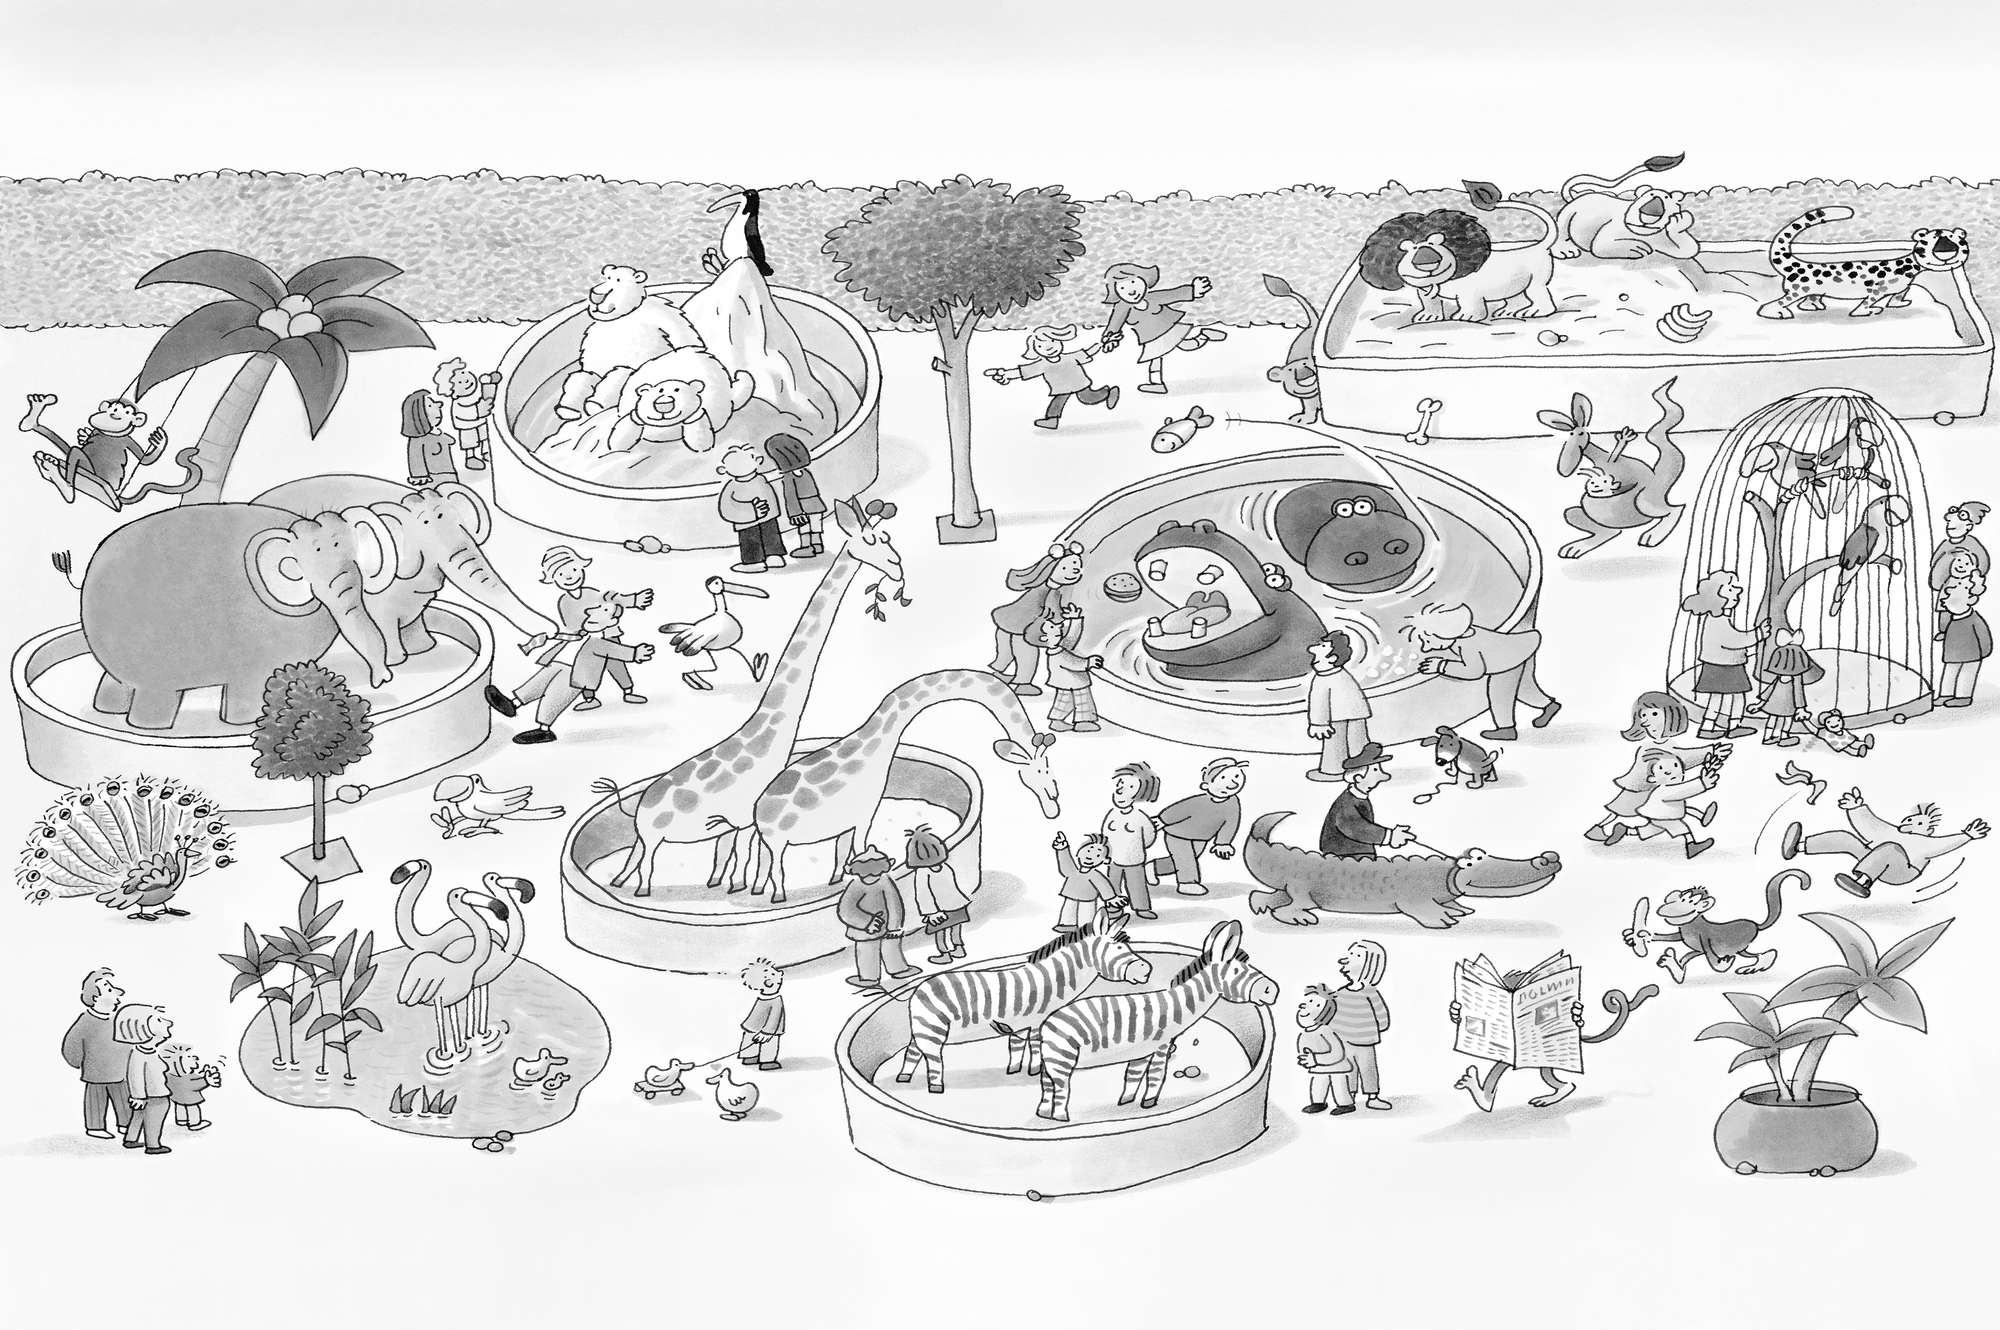             Kinder Fototapete Zoo Zeichnung in Schwarz Weiß auf Perlmutt Glattvlies
        